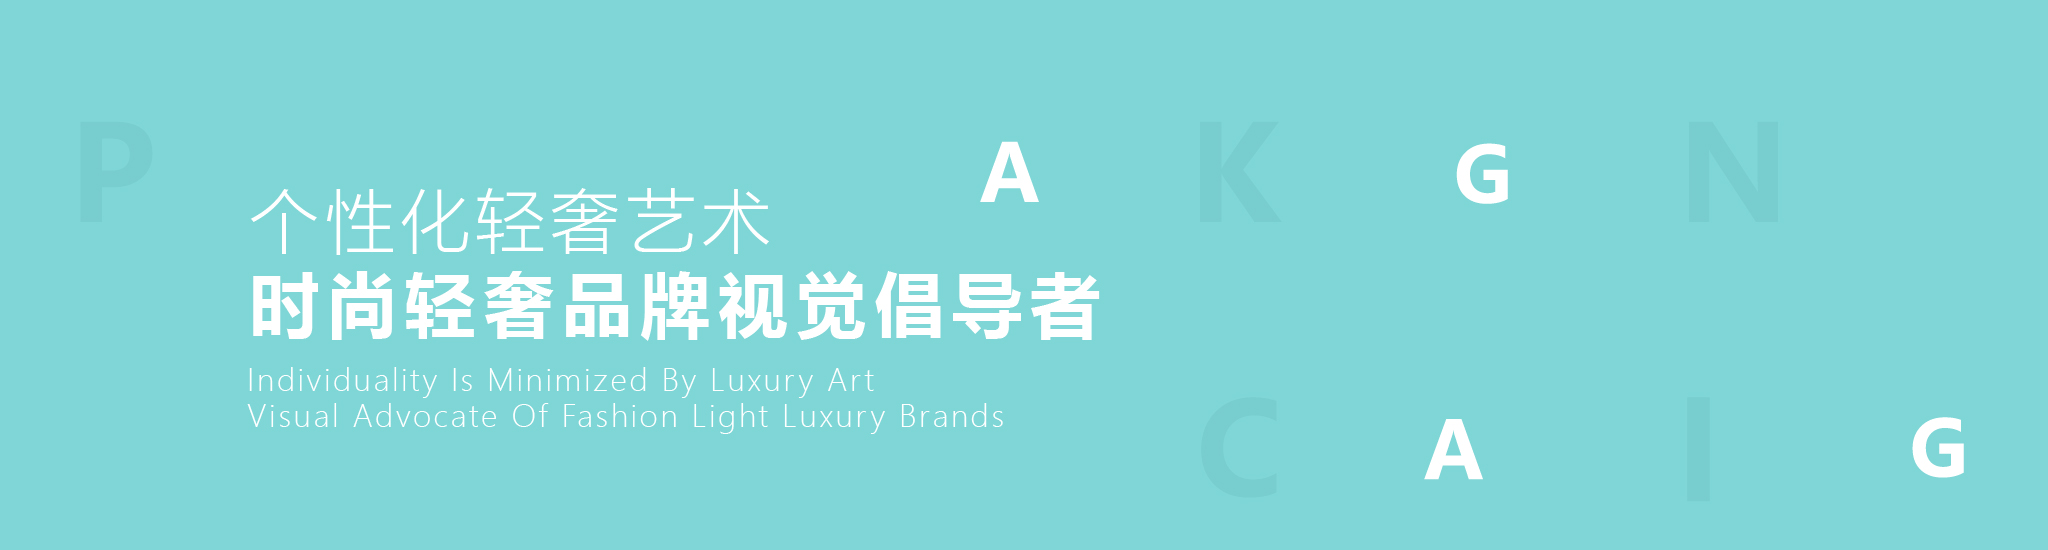 陆沐—品牌形象设计